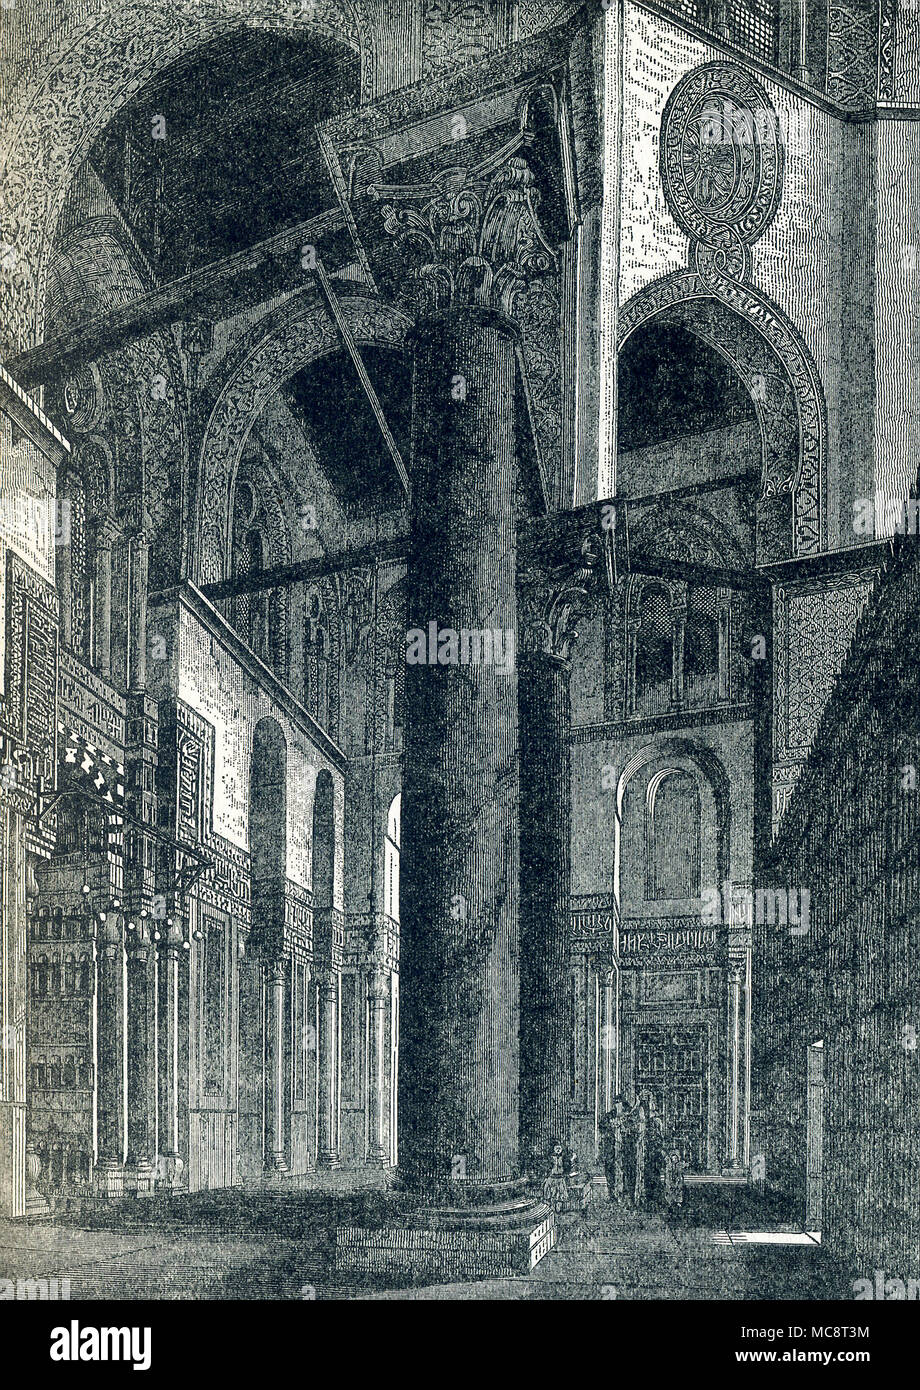 Esta ilustración data de alrededor de 1900. Se muestra una ventana en el complejo del Sultán al-Mansur Qalawun (también deletreado Kilawun). Está situado en al-Muizz li-Din Allah Street, en un área que solía ser parte de la zona occidental Fatimita Palace en El Cairo, Egipto. Su origen se remonta a 1285 A.D. y período mameluco en Egipto. El maestro arquitecto fue Amir Alam al-Din al-Shuja'i. El complejo incluye un mausoleo, una madrasa, y un hospital. Está hecha de piedra y consta de arcos huecos verticales soportados por columnas de mármol (visto aquí) dentro del cual hay ventanales decorados con formas geométricas entrelazadas. Foto de stock